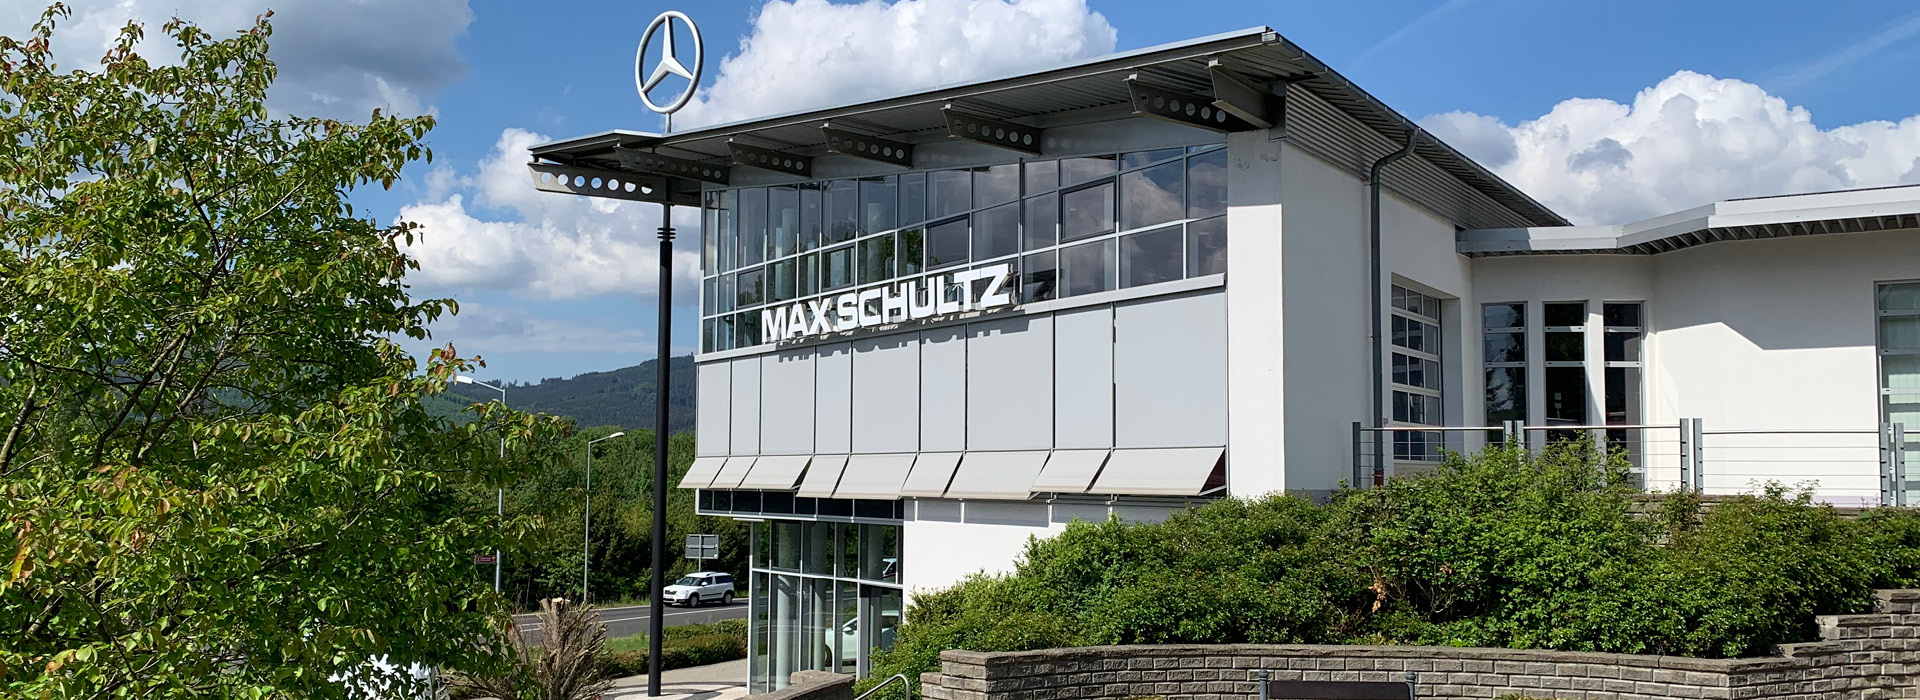 © Max Schultz Automobile GmbH & Co. KG